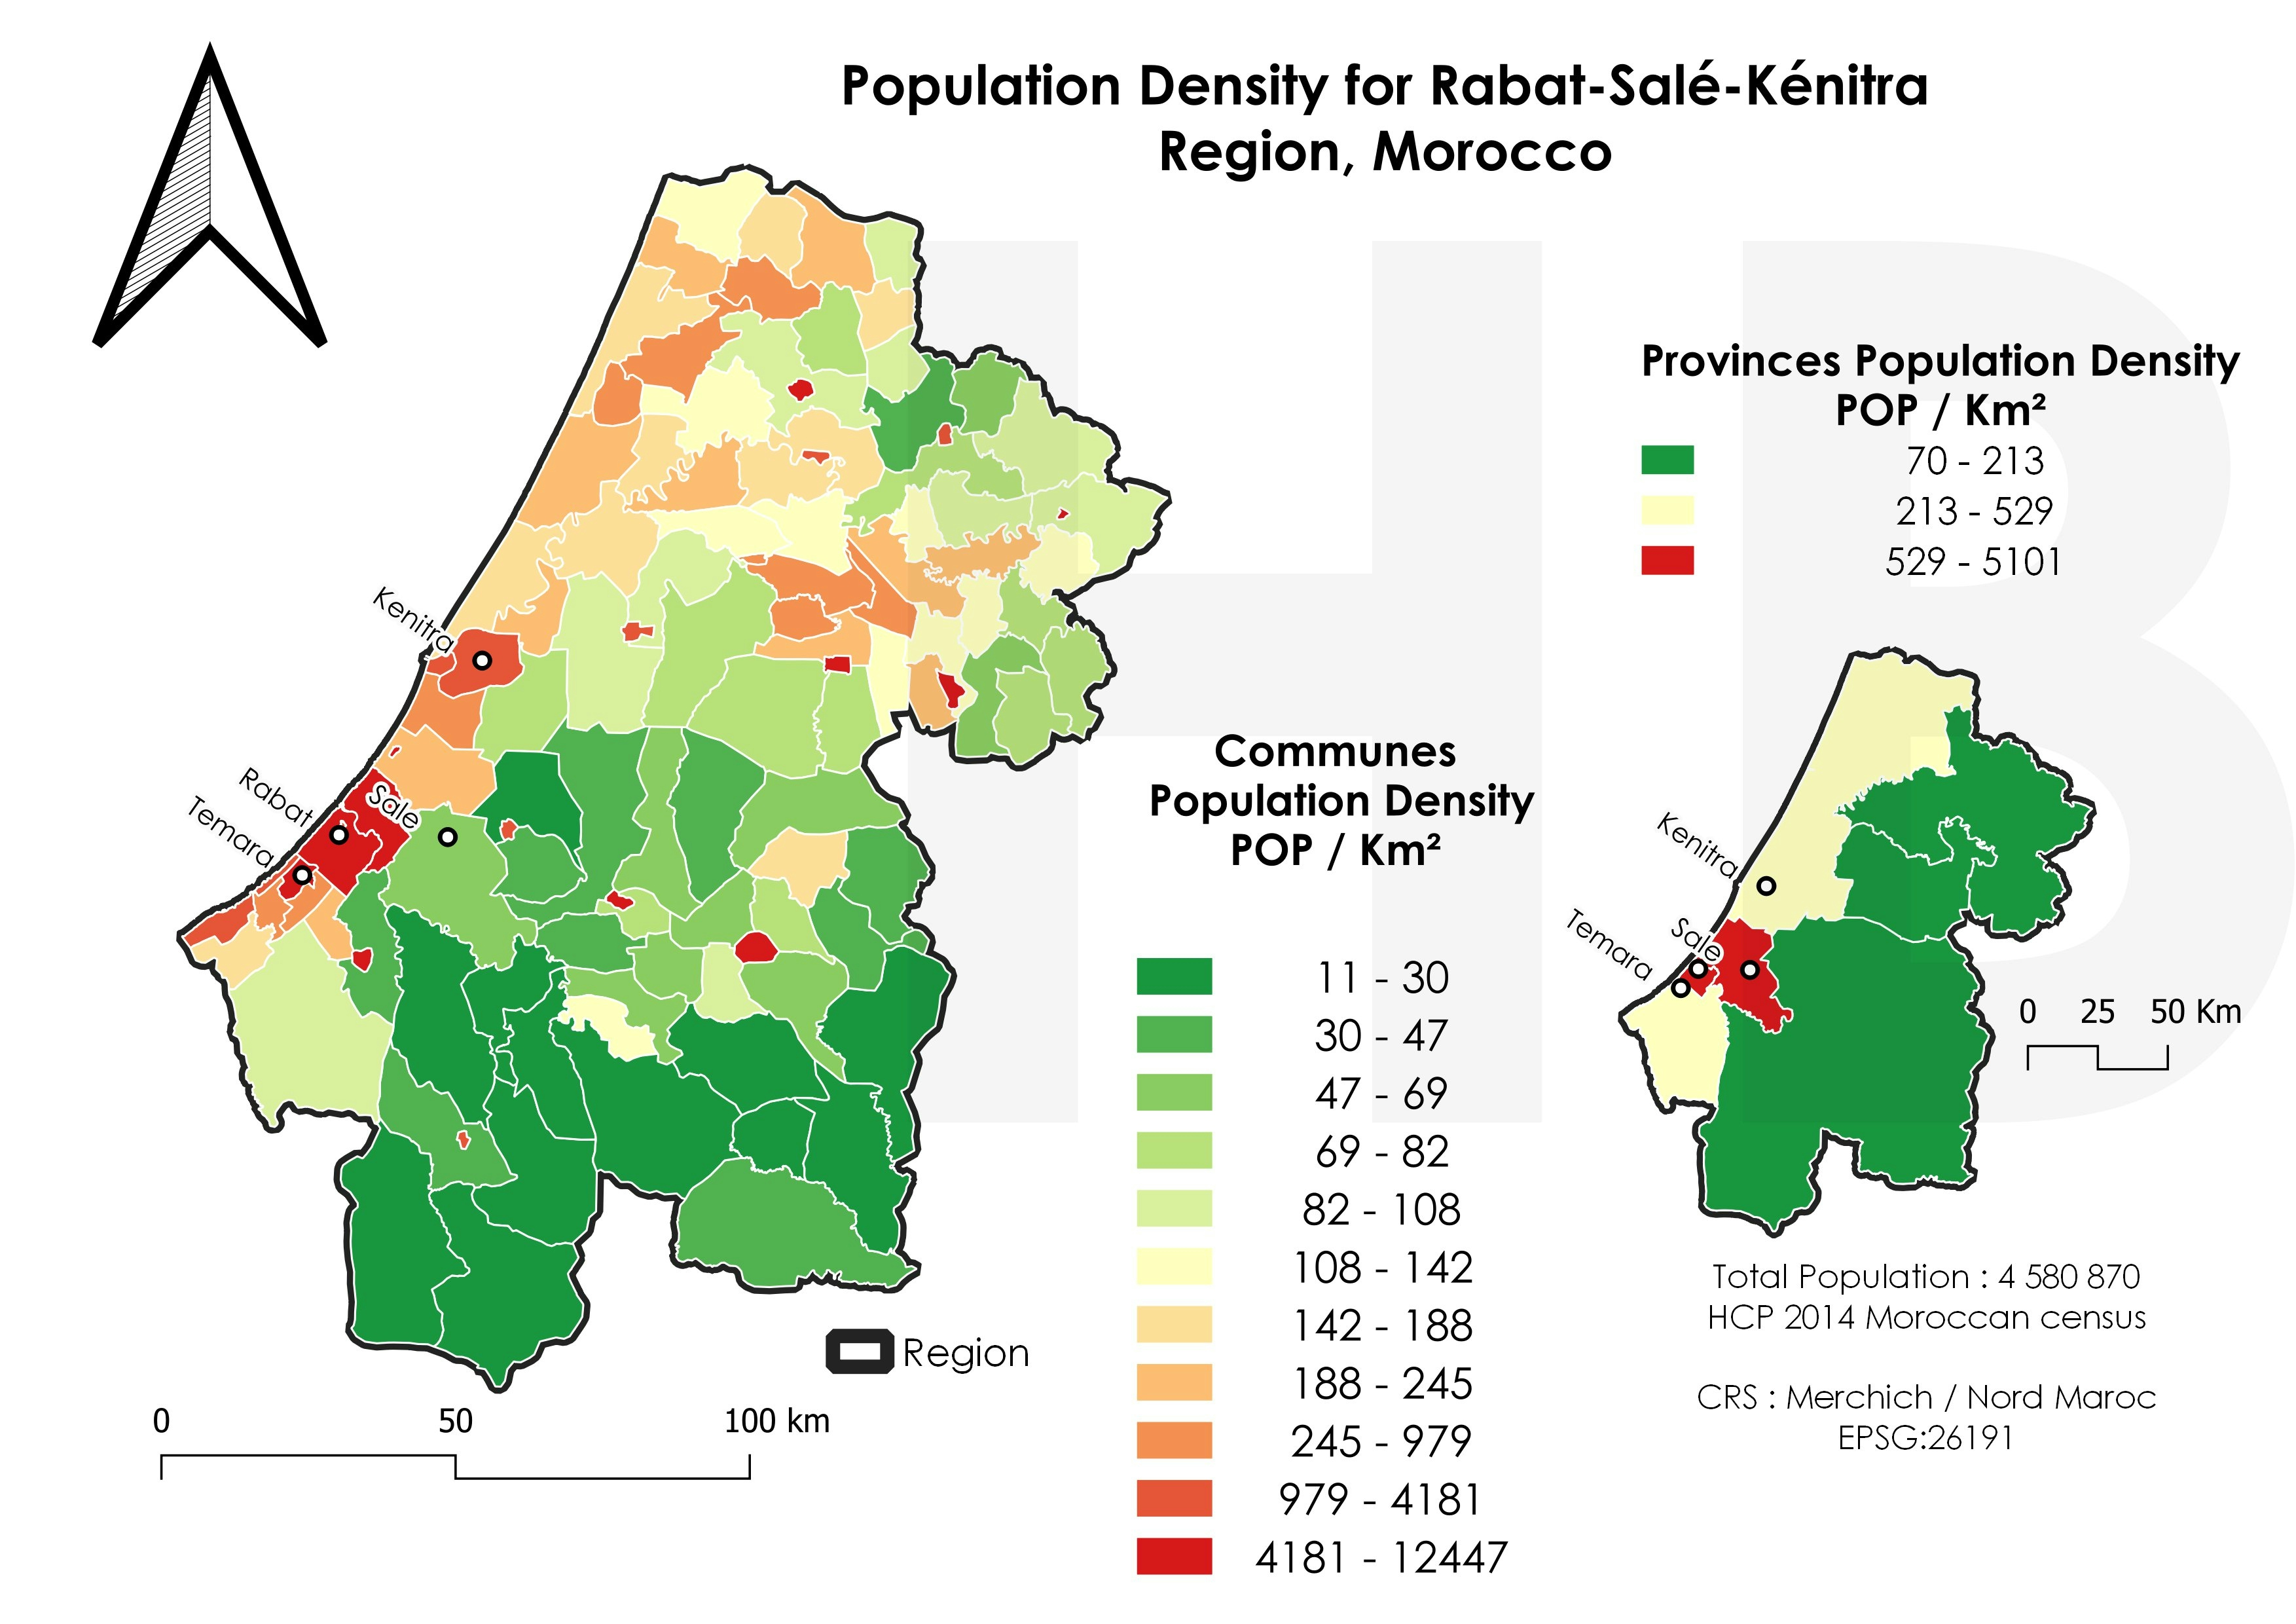 RSK Population Density